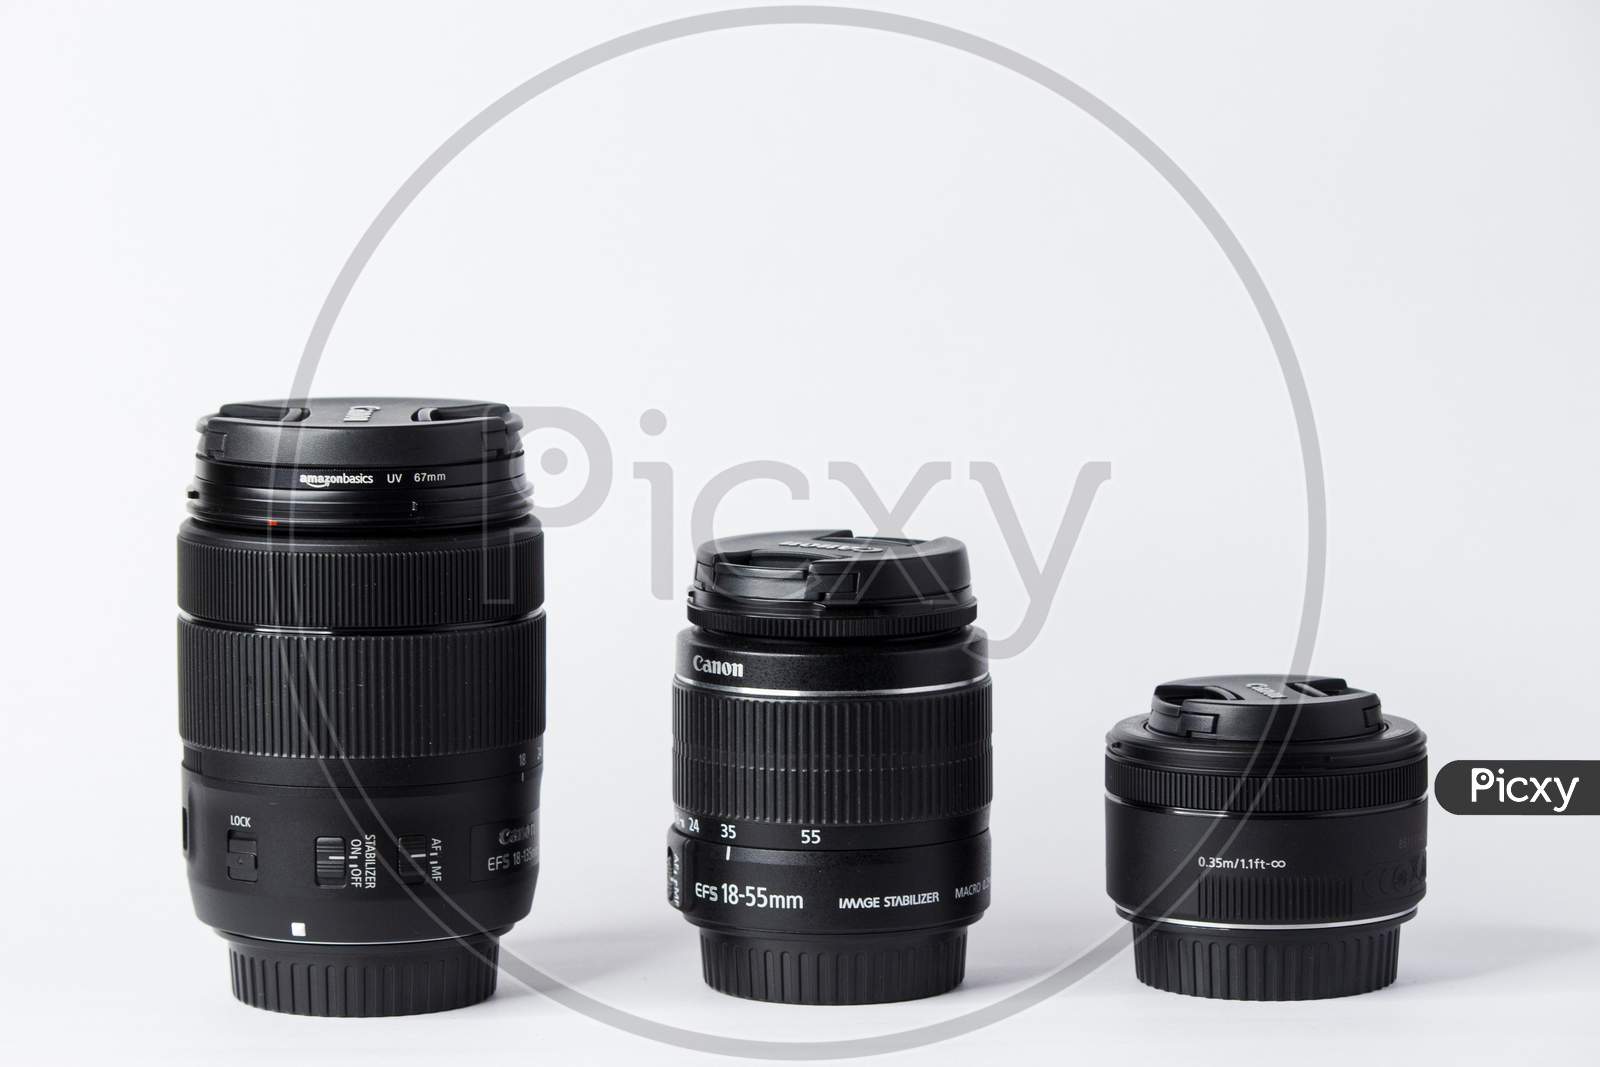 A set of three camera lenses